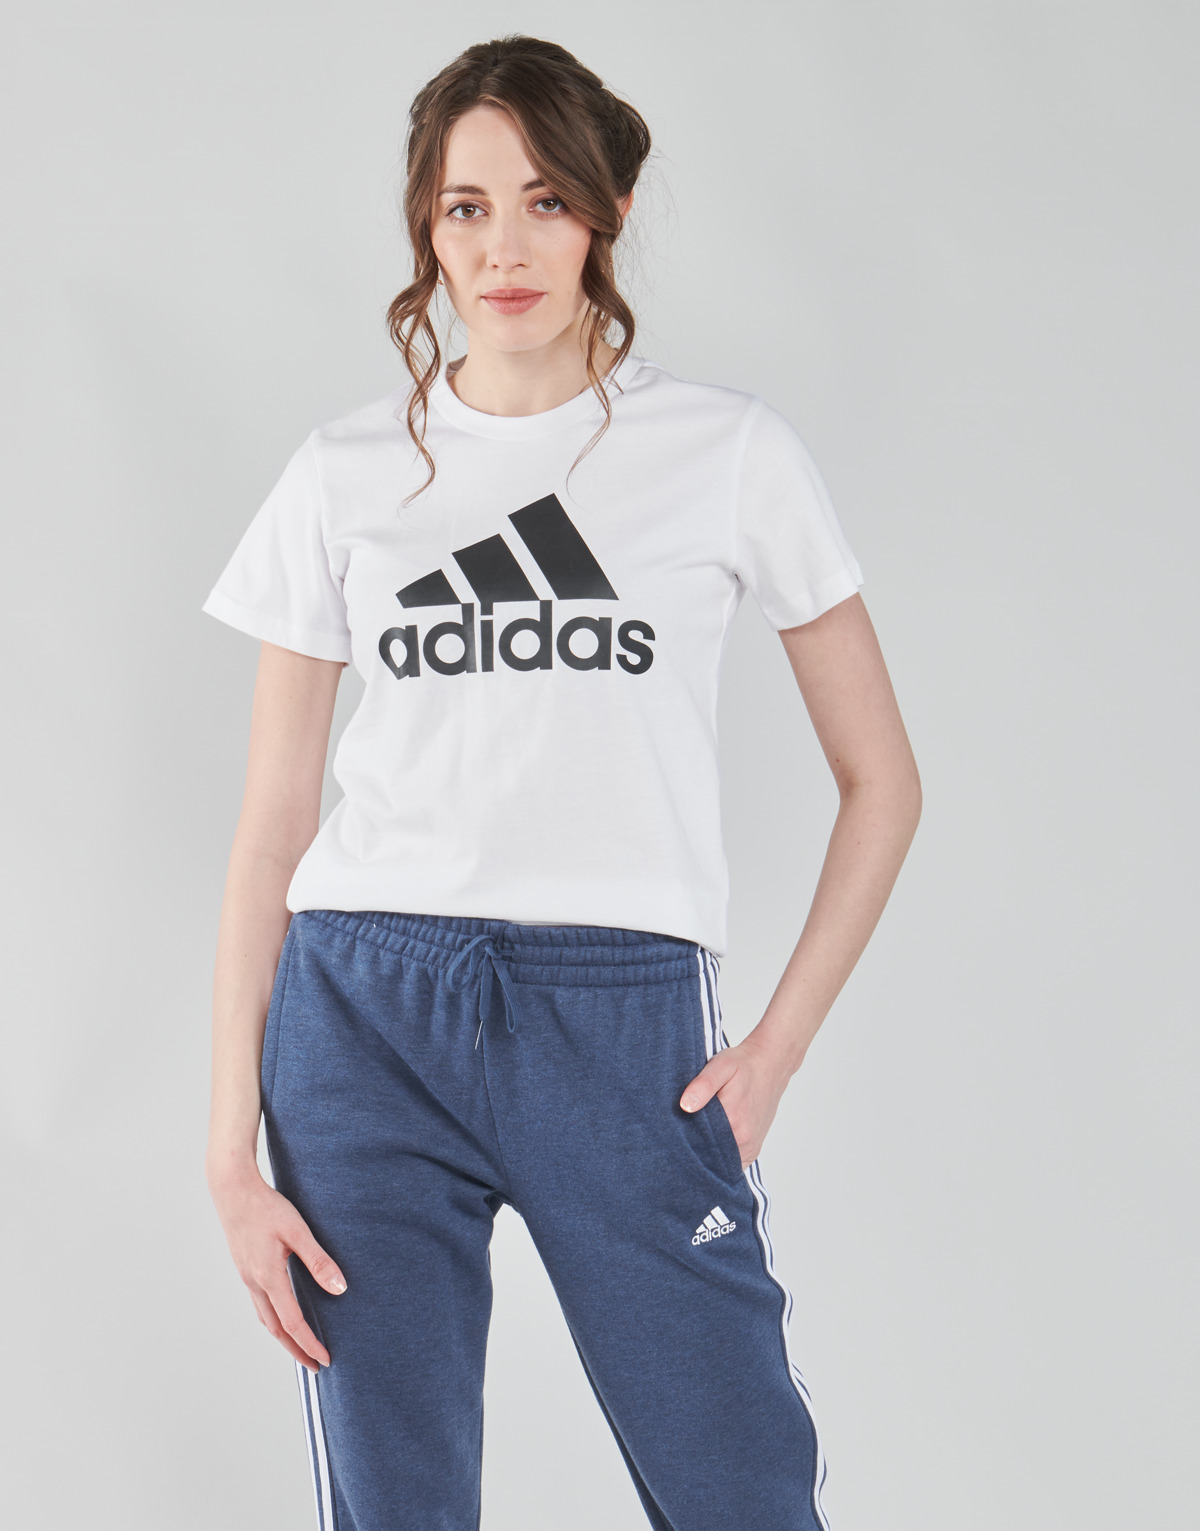 Adidas Sportswear Blanc W BL T Tc28AaHq